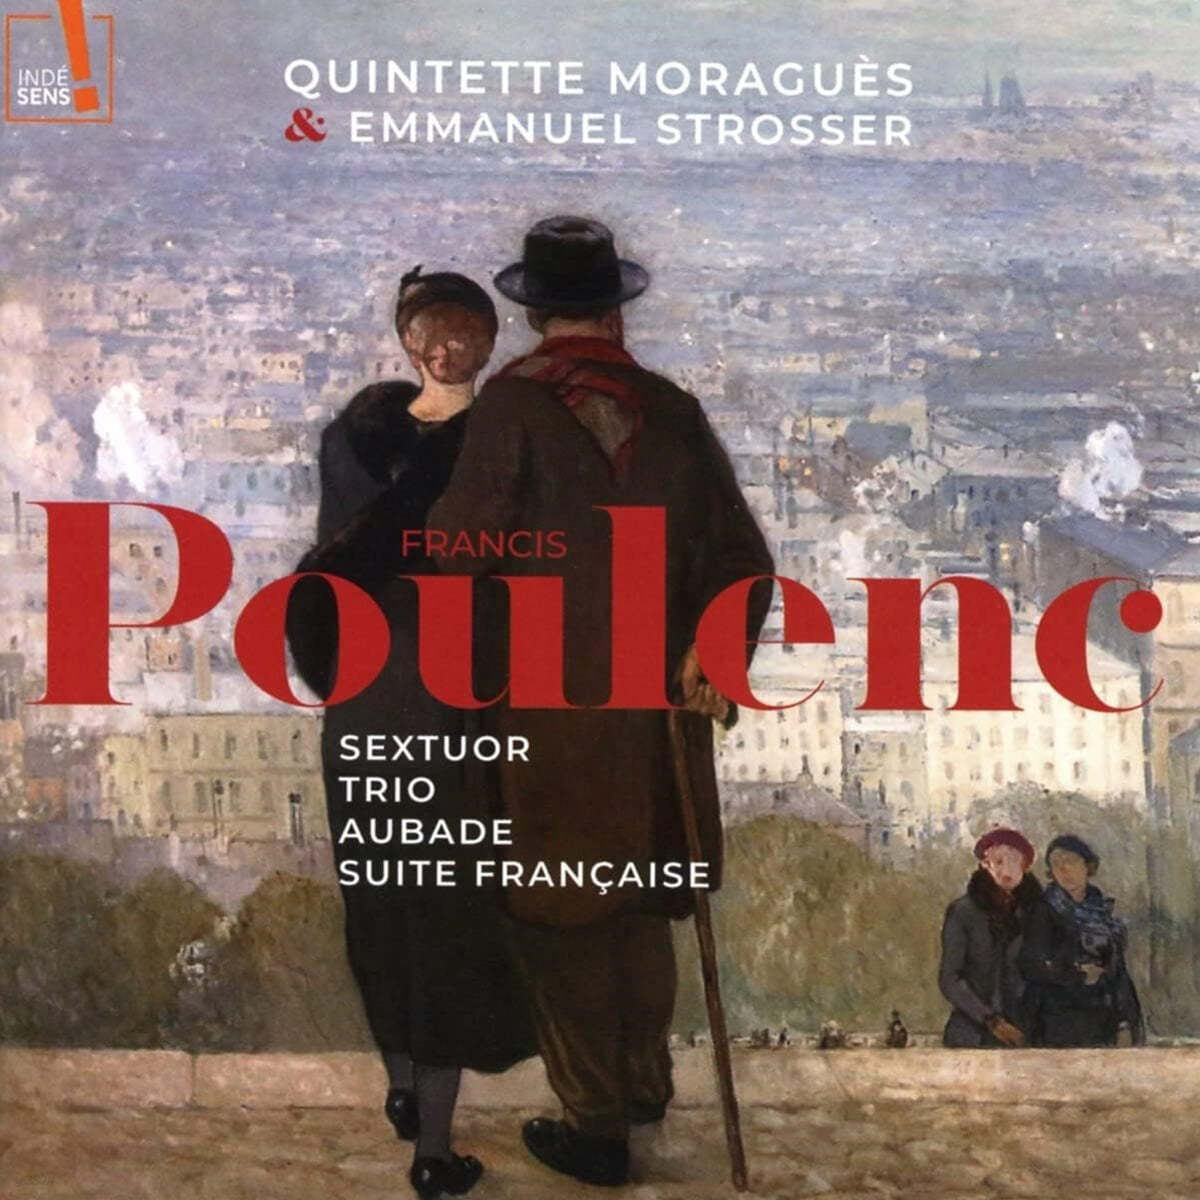 Quintette Moragues / Emmanuel Strosser 풀렝크: 육중주, 삼중주, 오바드, 프랑스 모음곡 (Quintette Moragues: Poulenc)